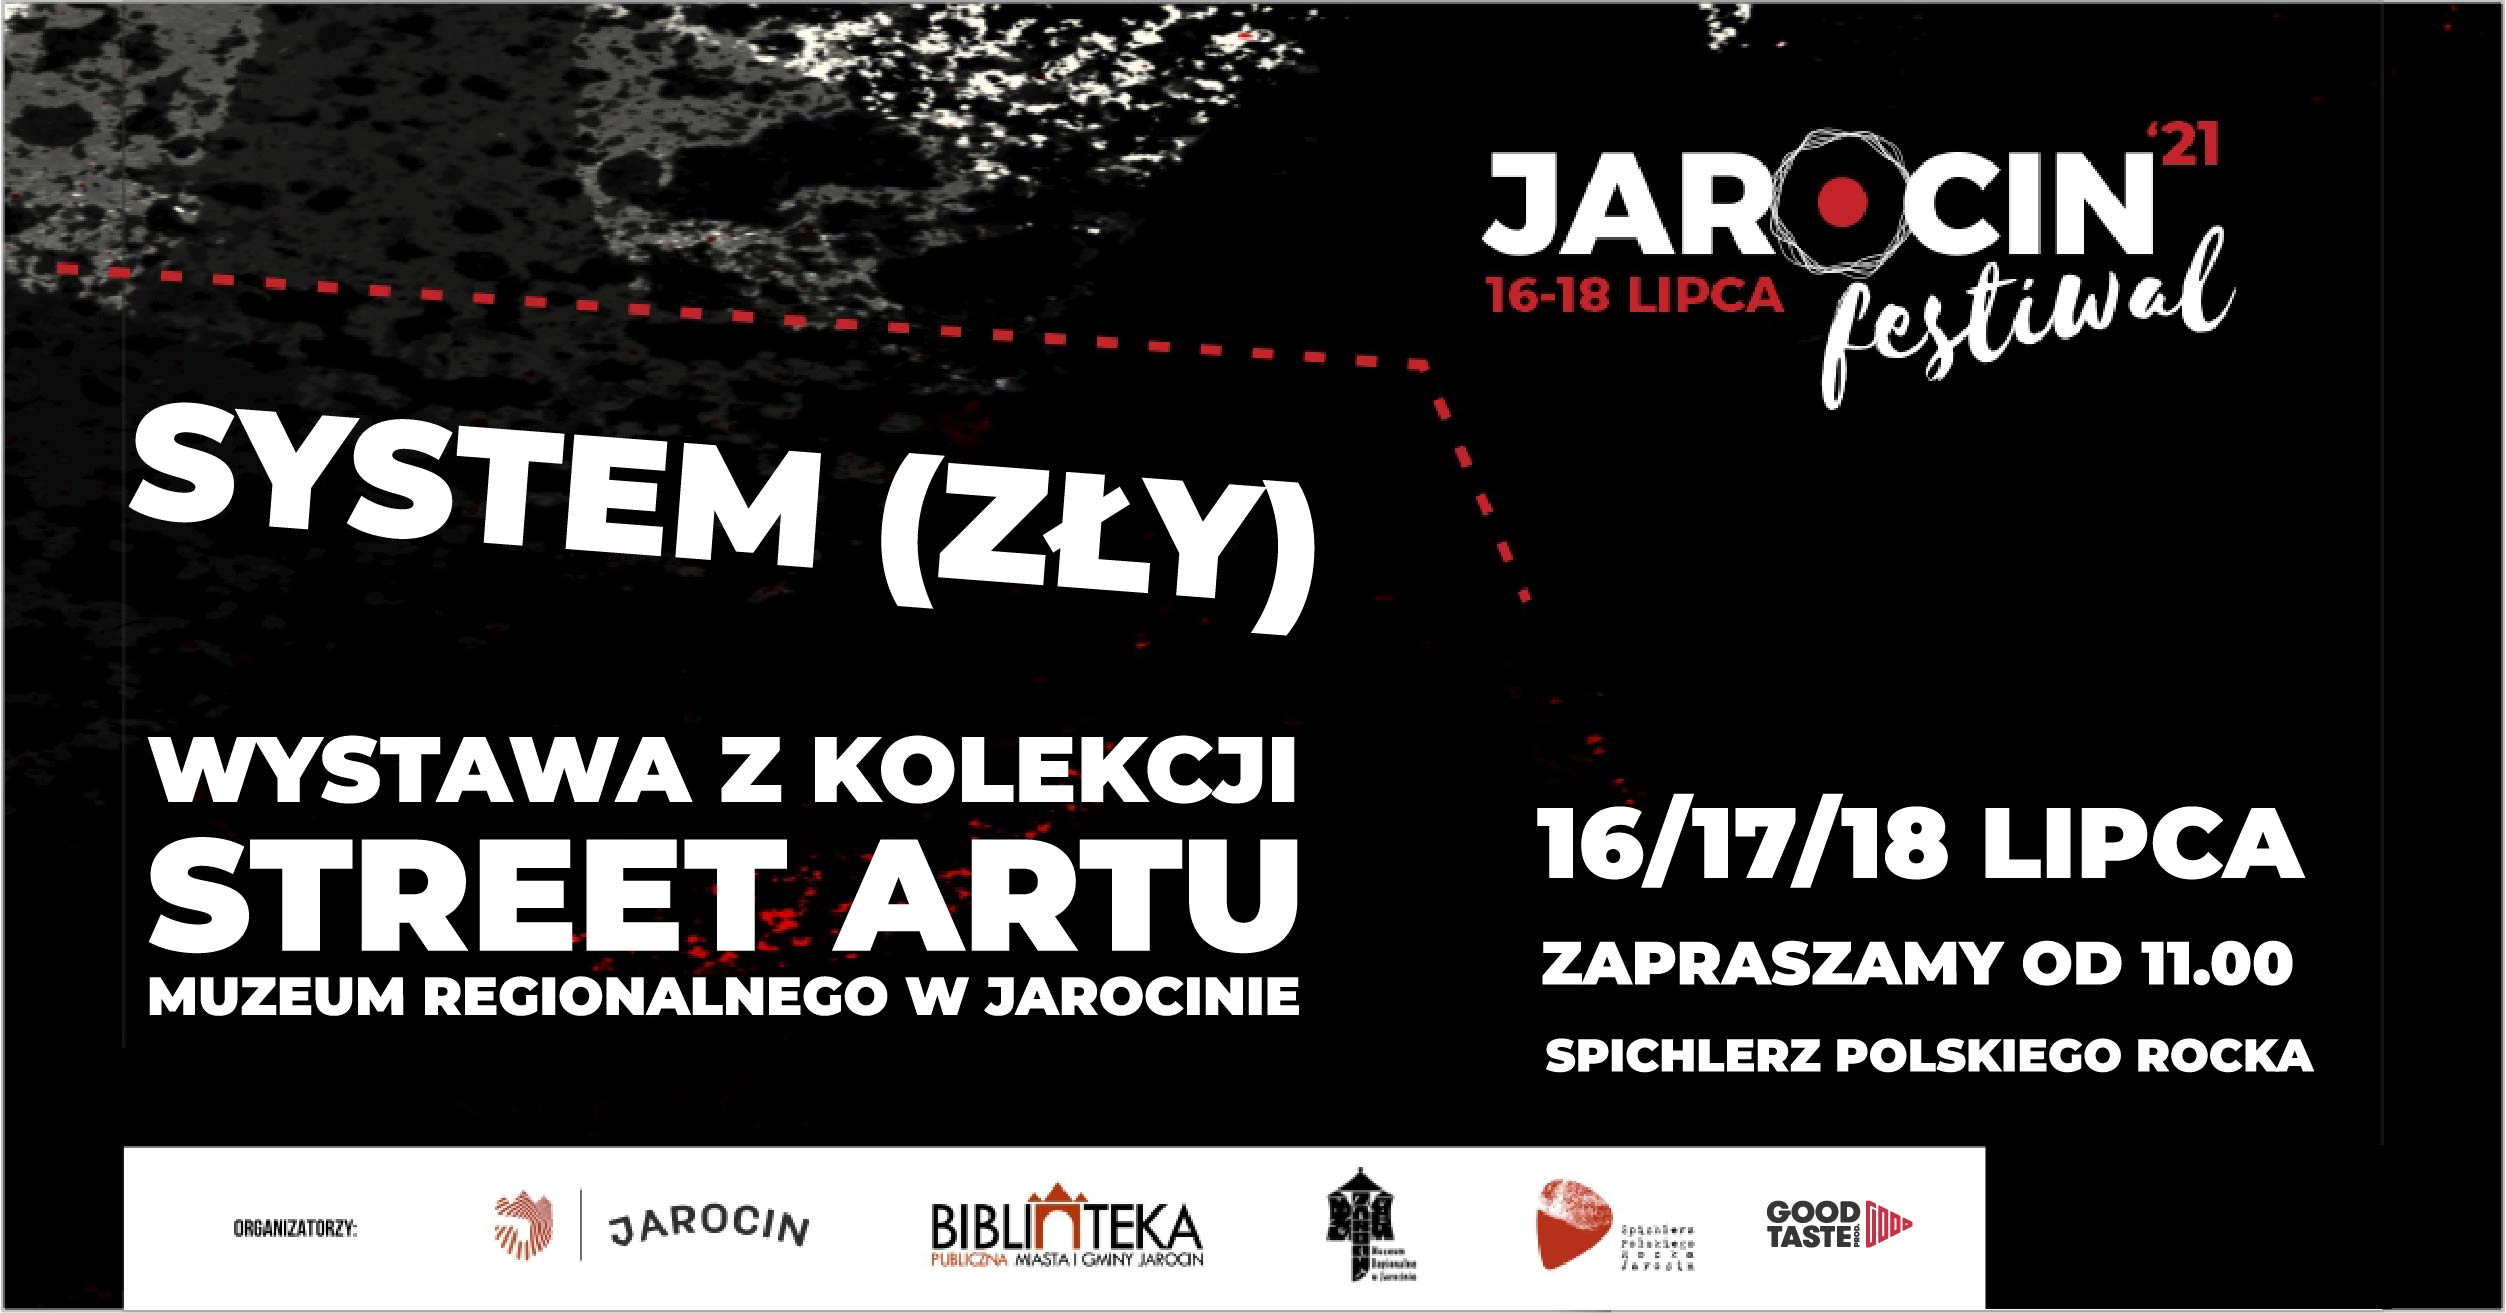 Jarocin Festiwal 2021 – WYSTAWA „ZŁY (SYSTEM)” W SPICHLERZU POLSKIEGO ROCKA.